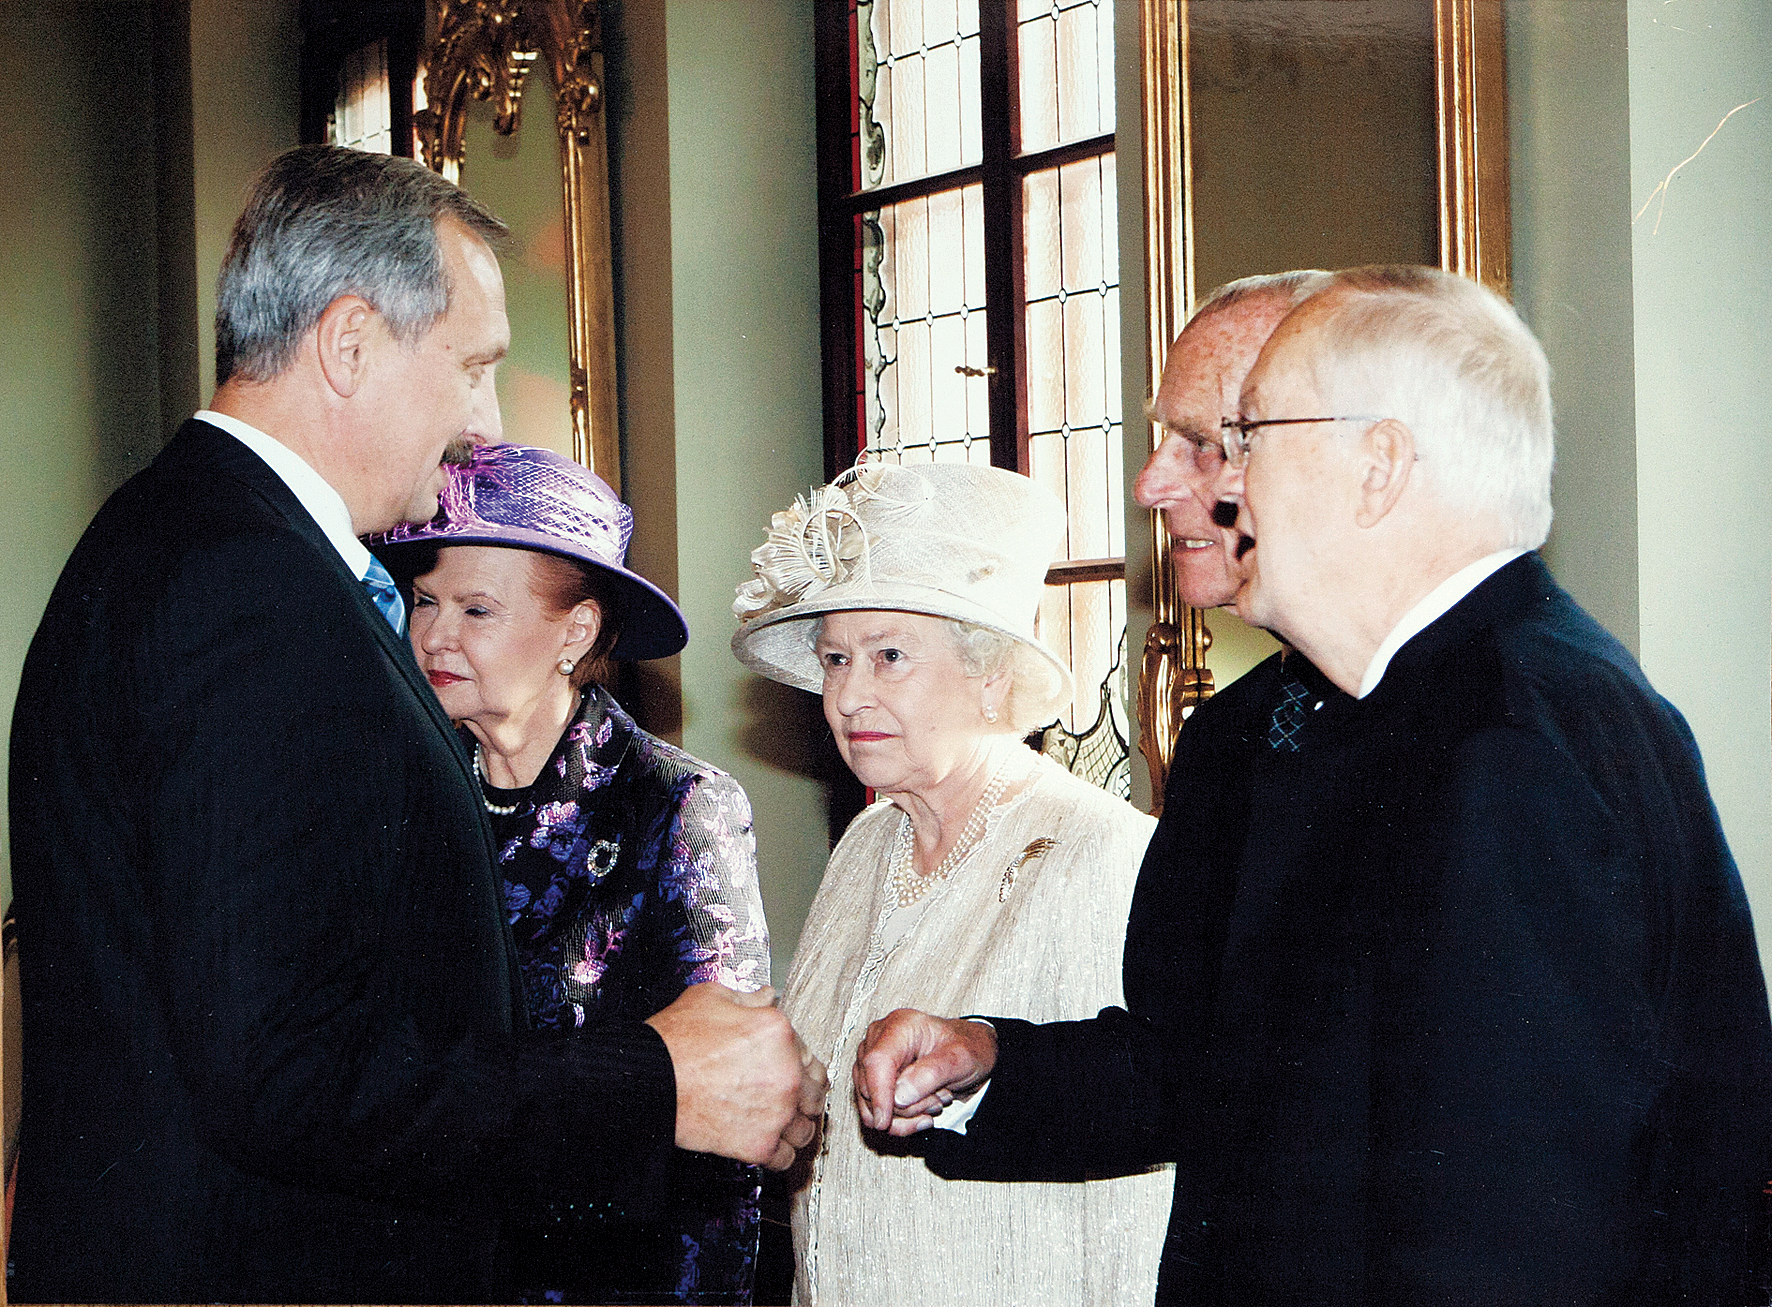 Lielbritānijas karalienes Elizabetes II vizītes laikā Latvijā 2006. gadā. Tolaik Viesturs Šiliņš darbojās lielajā politikā. “No politikas cilvēkiem man patīk britu karaļpāris – augsti inteliģenta ģimene”.